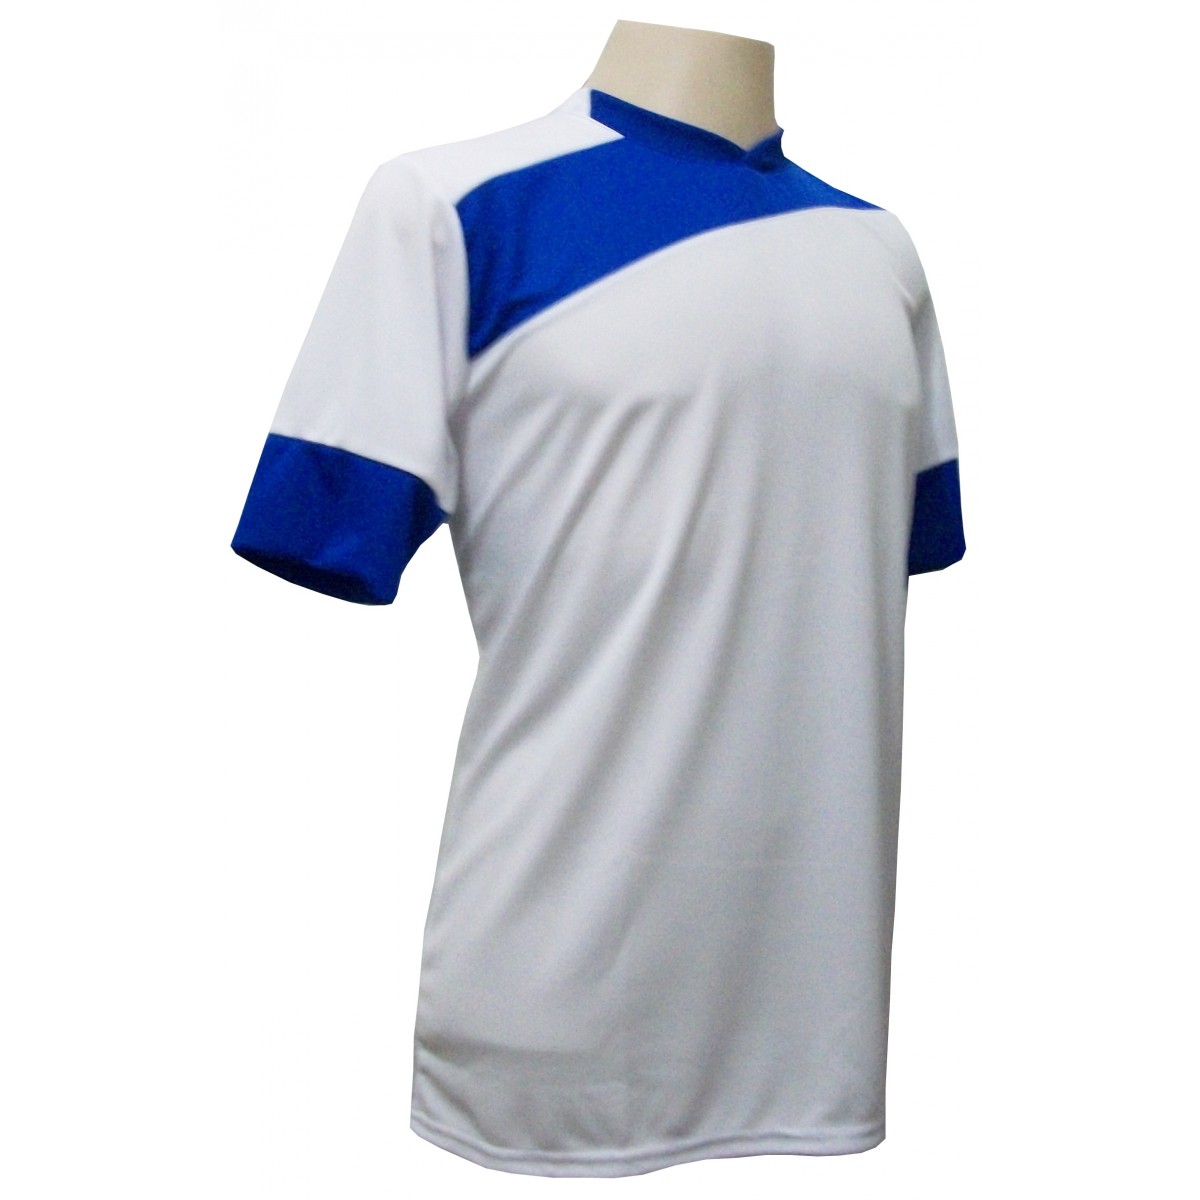 Uniforme Esportivo com 14 camisas modelo Sporting Branco/Royal + 14 calções modelo Madrid Royal + Brindes